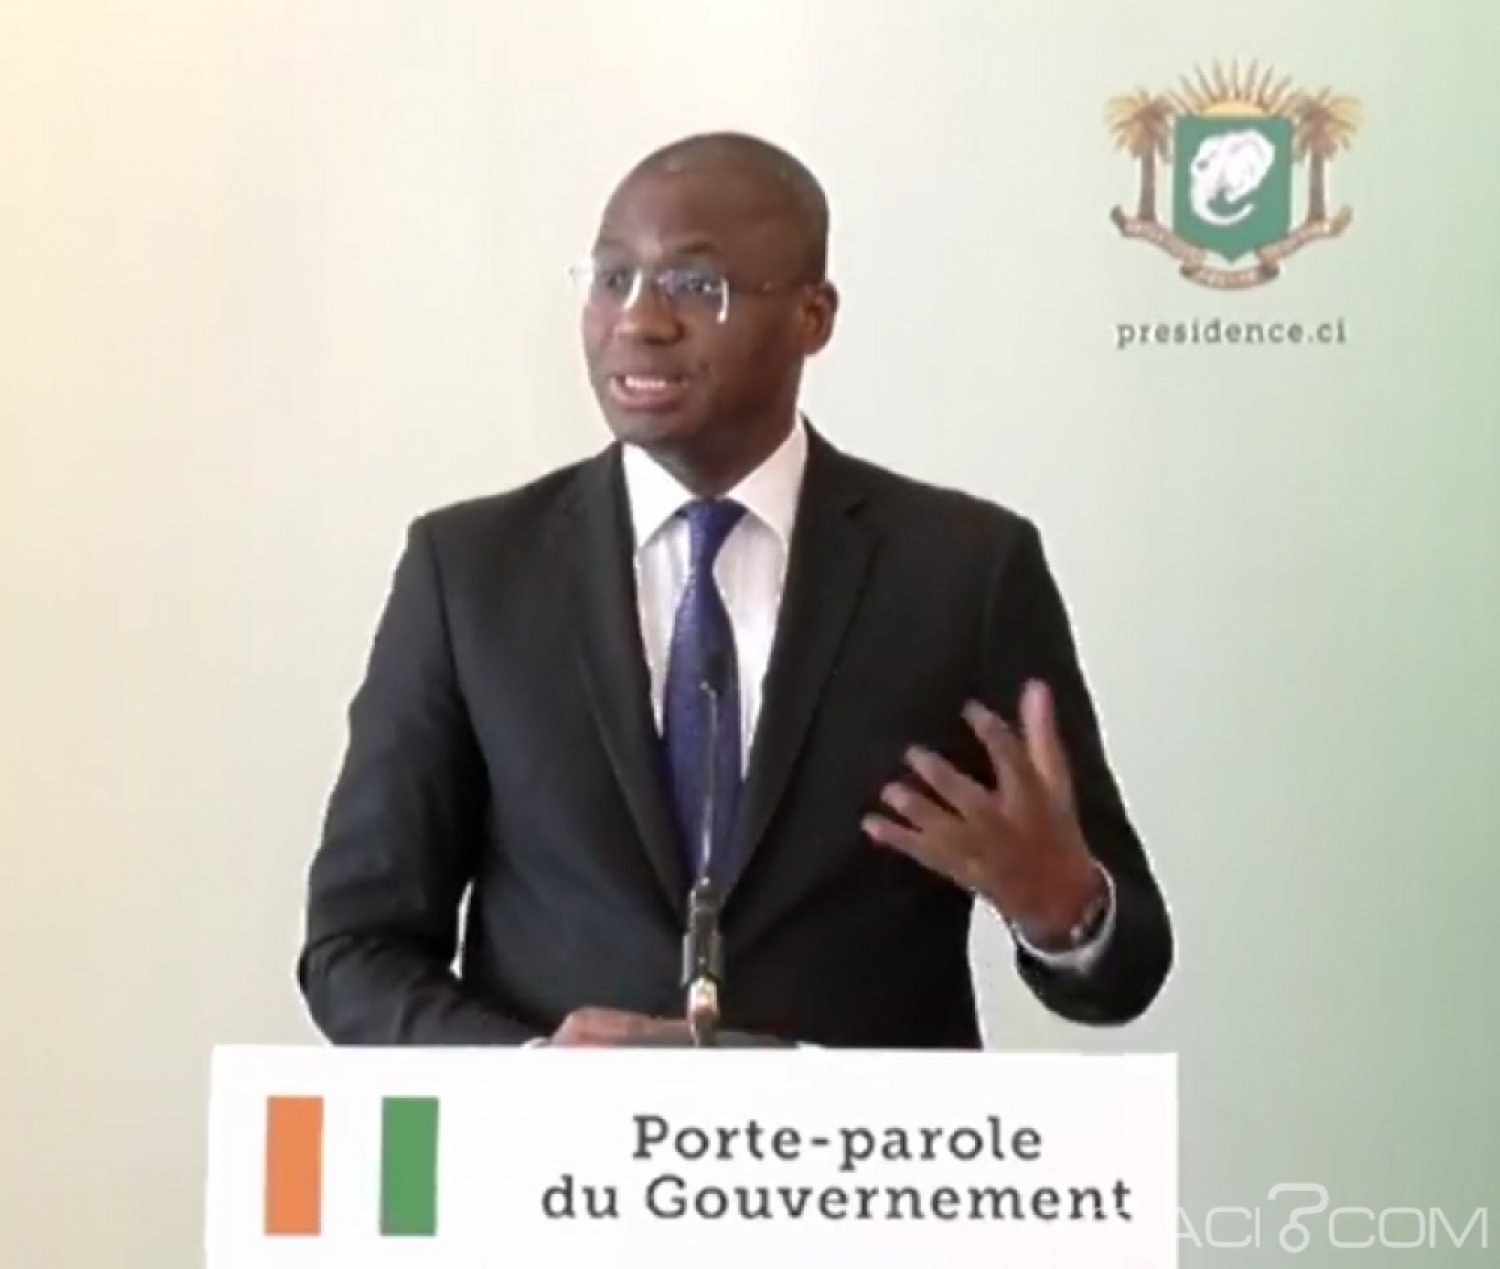 Côte d'Ivoire : Le restaurant Texas Grillz  sis à  la  Riviera 3 était situé  dans un domaine public, justifie  le porte-parole du gouvernement